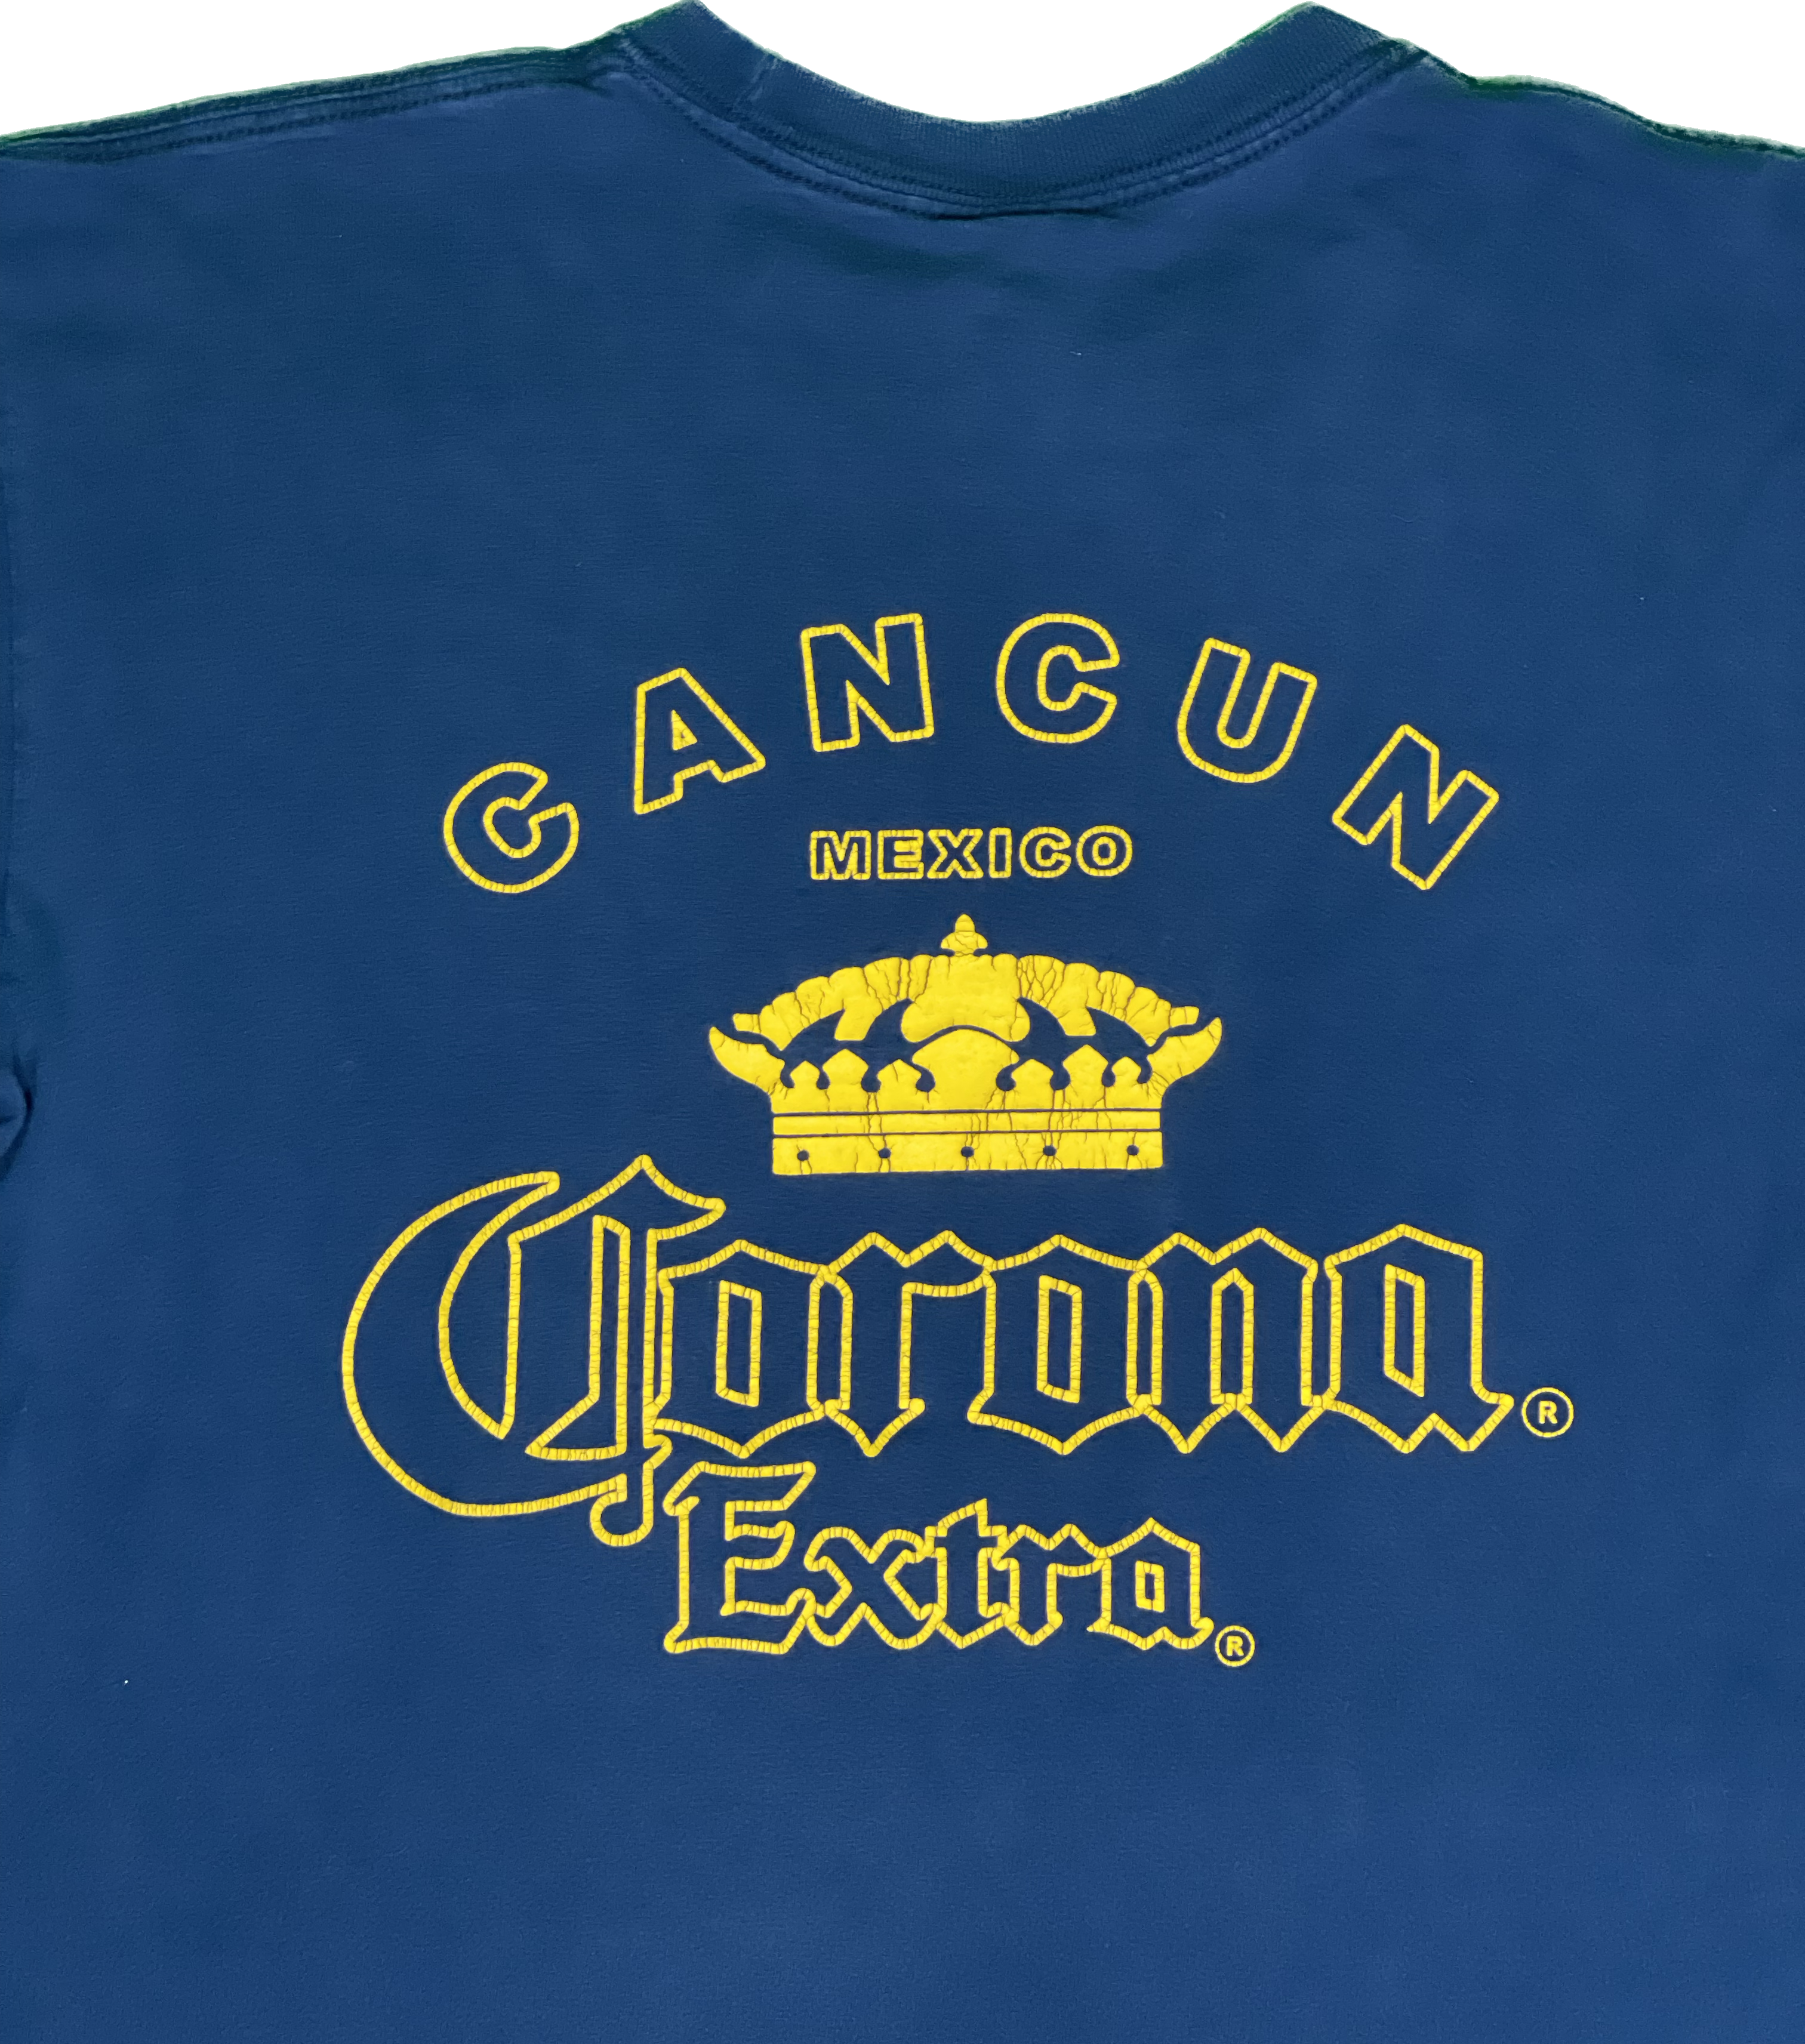 Corona Cancun Mexico T-Shirt